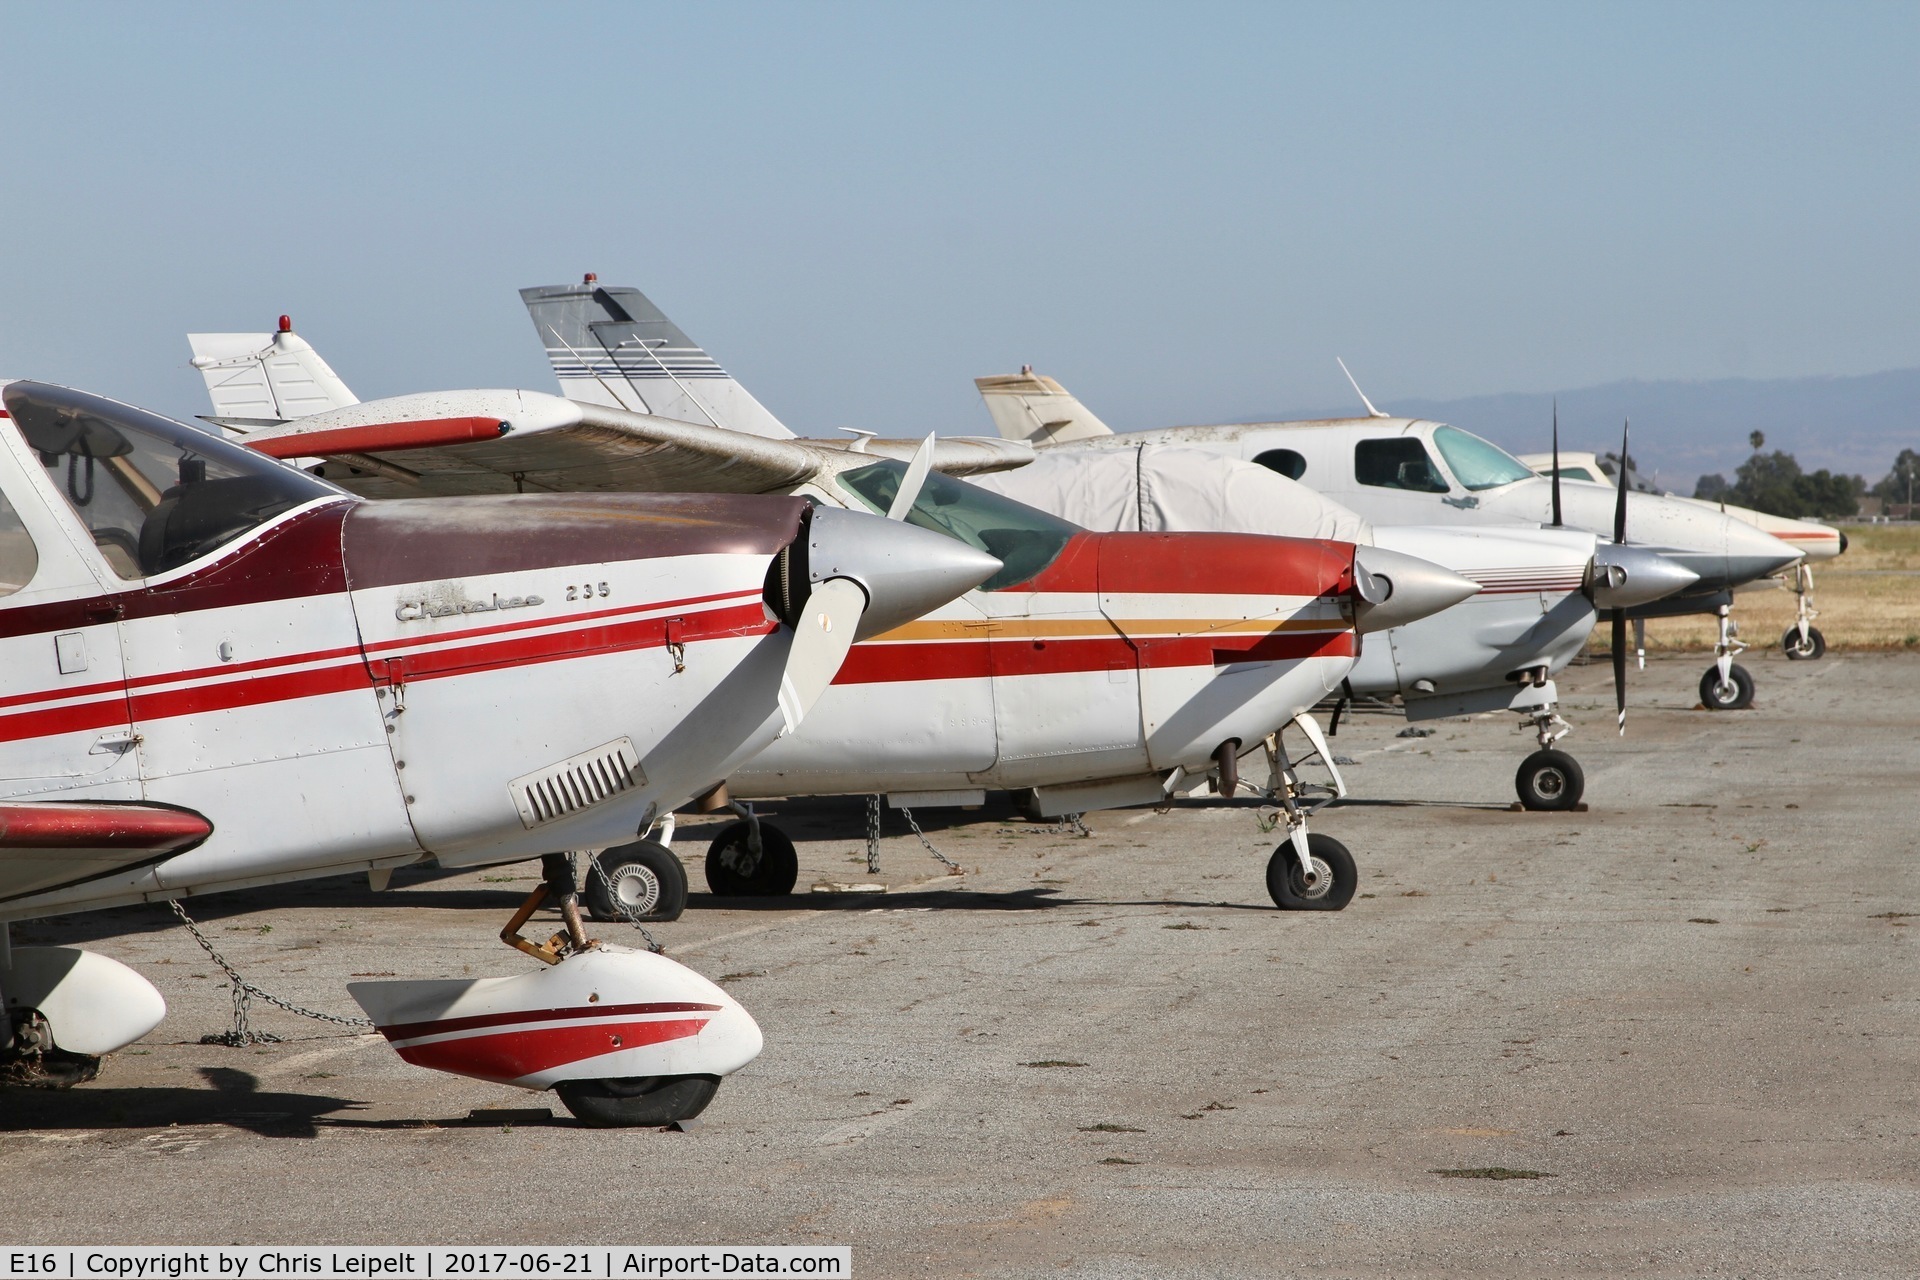 South County Arpt Of Santa Clara County Airport (E16) - Row of rotting aircraft at San Martin Airport, CA.